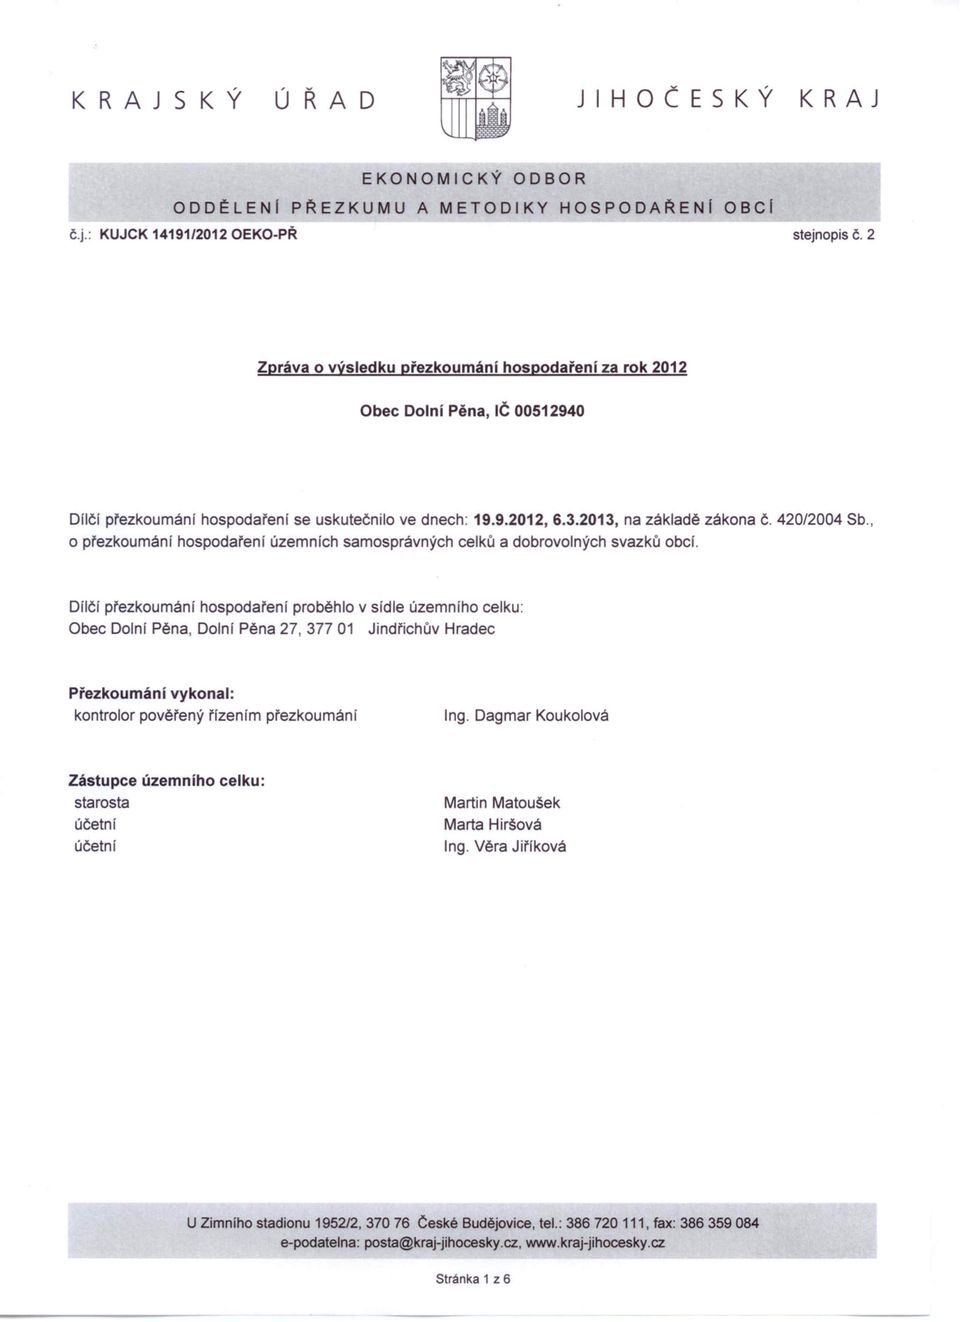 o přezkoumání hospodaření územních samosprávných celků a dobrovolných svazků ober. 420/2004 Sb.